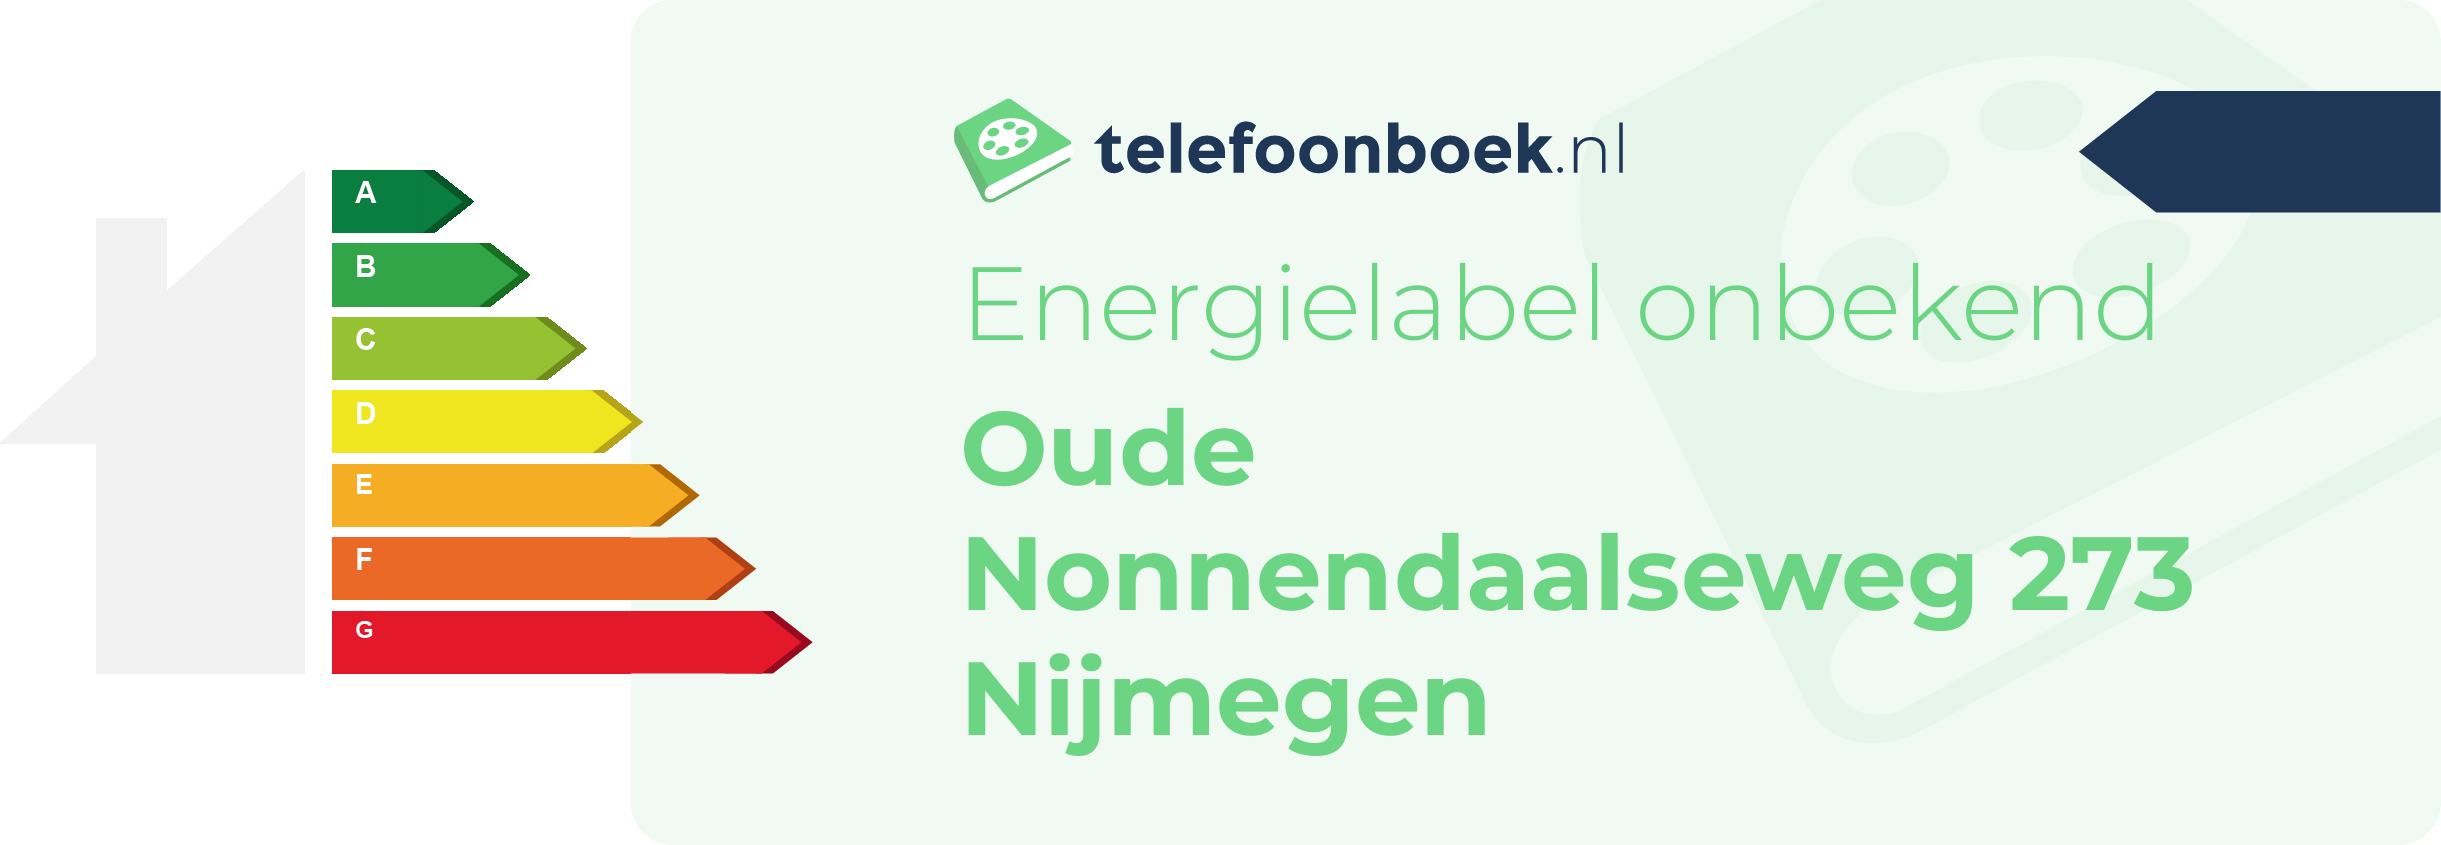 Energielabel Oude Nonnendaalseweg 273 Nijmegen